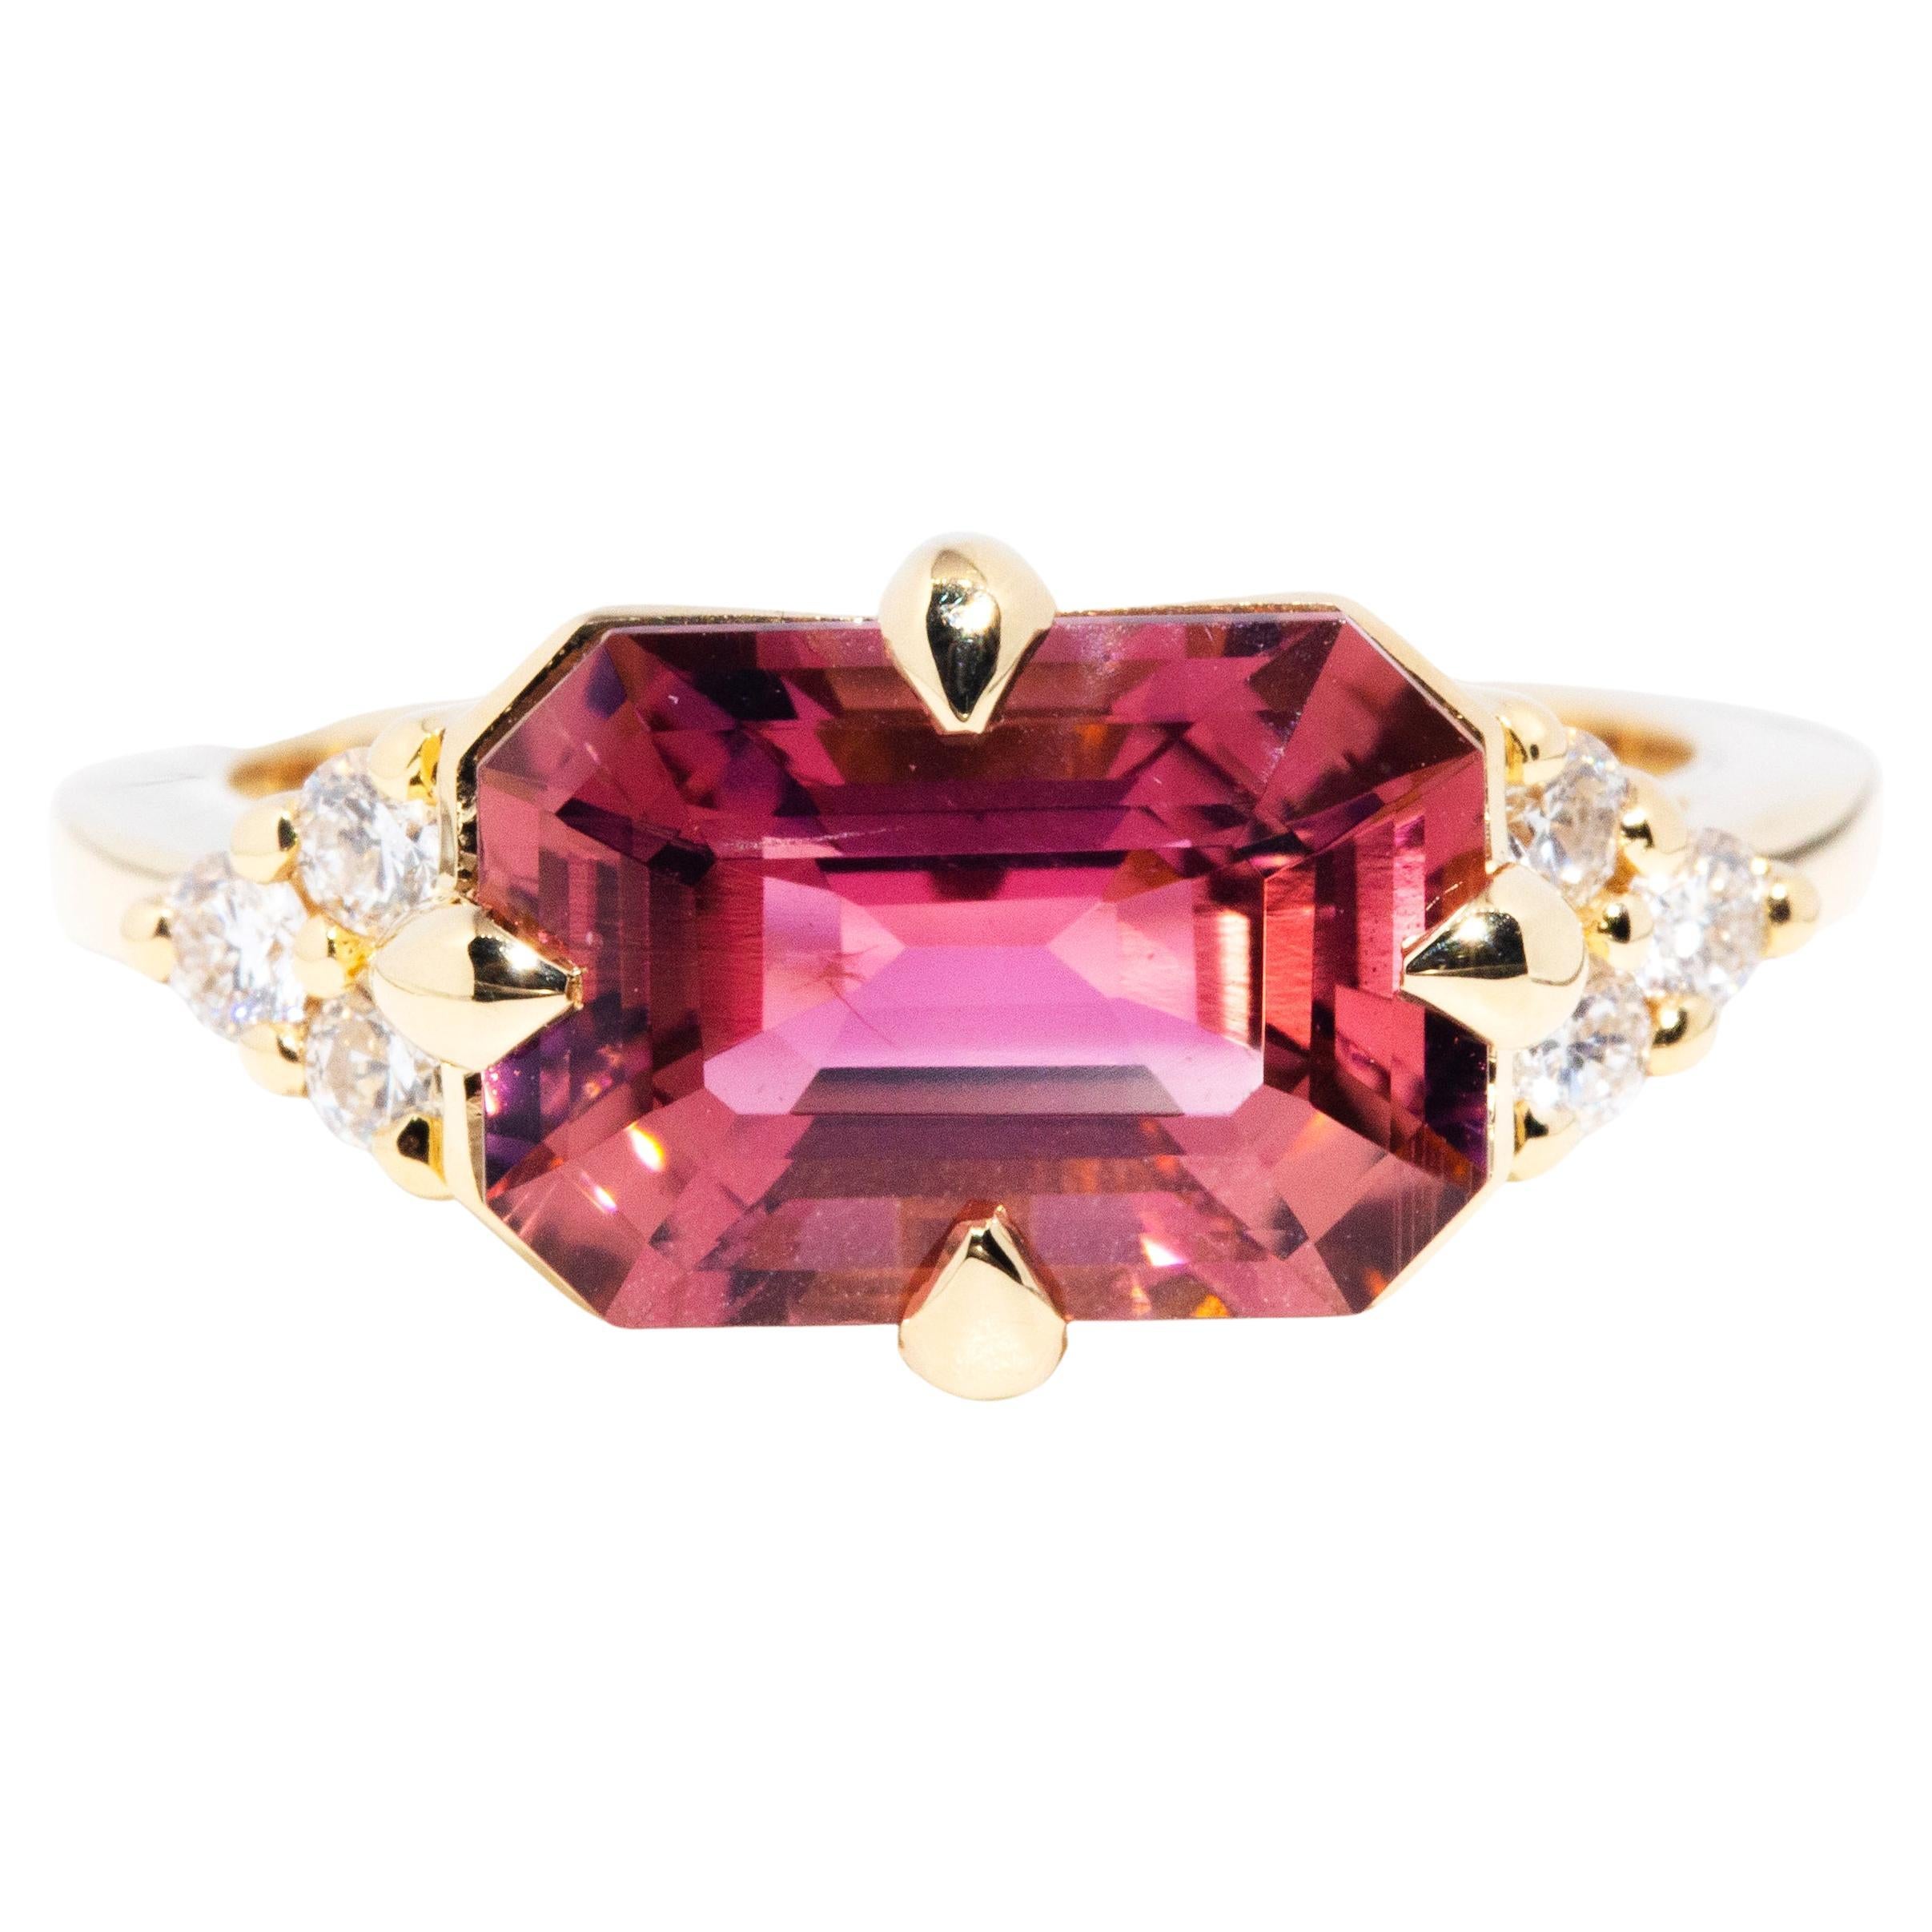 4.09 Carat Pink Tourmaline and Diamond Contemporary 18 Carat Yellow Gold Ring